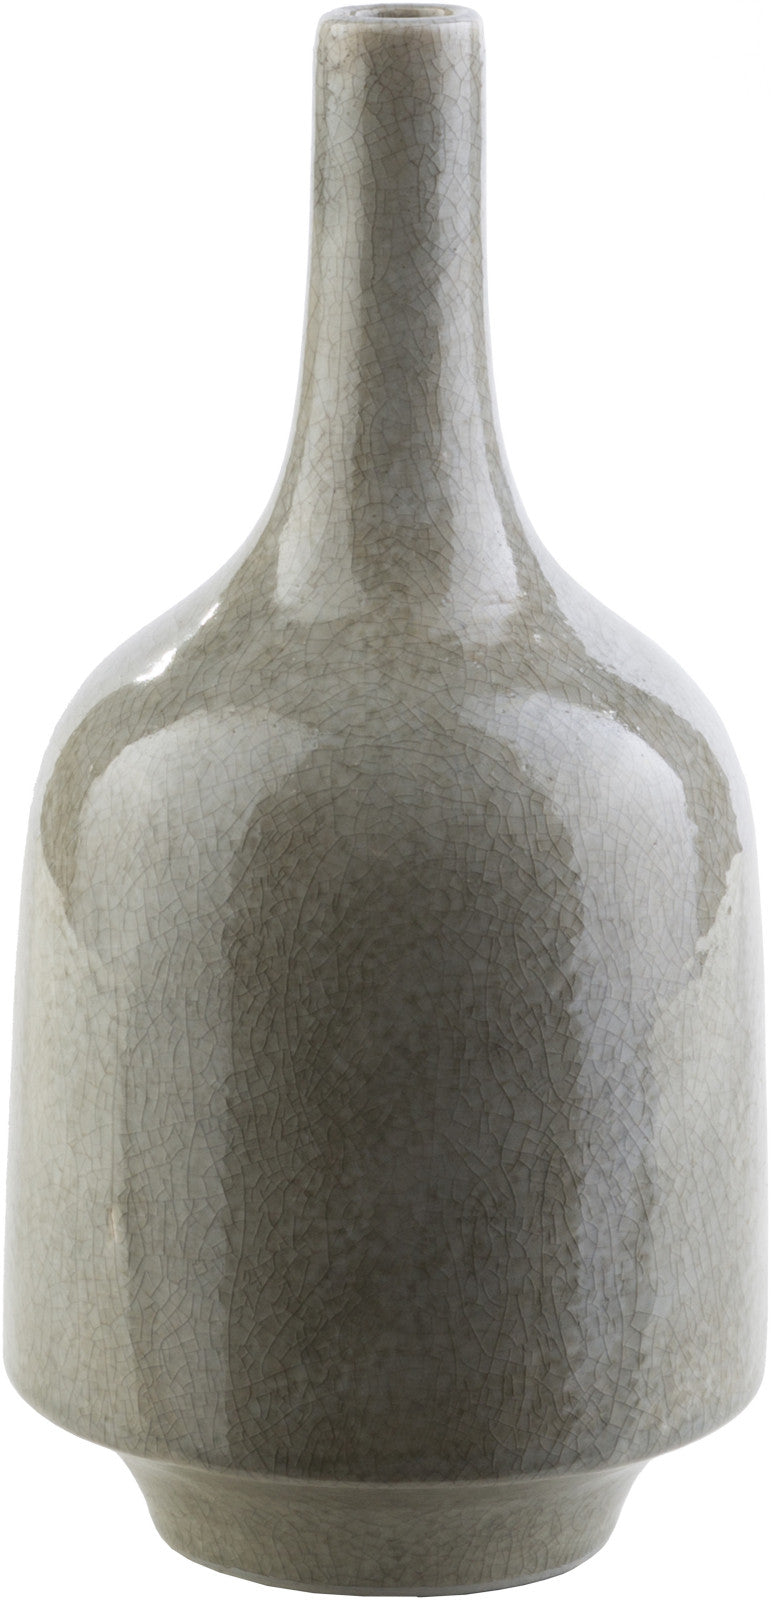 Surya Olsen OLS-100 Vase Medium 5.91 X 5.91 X 12 inches